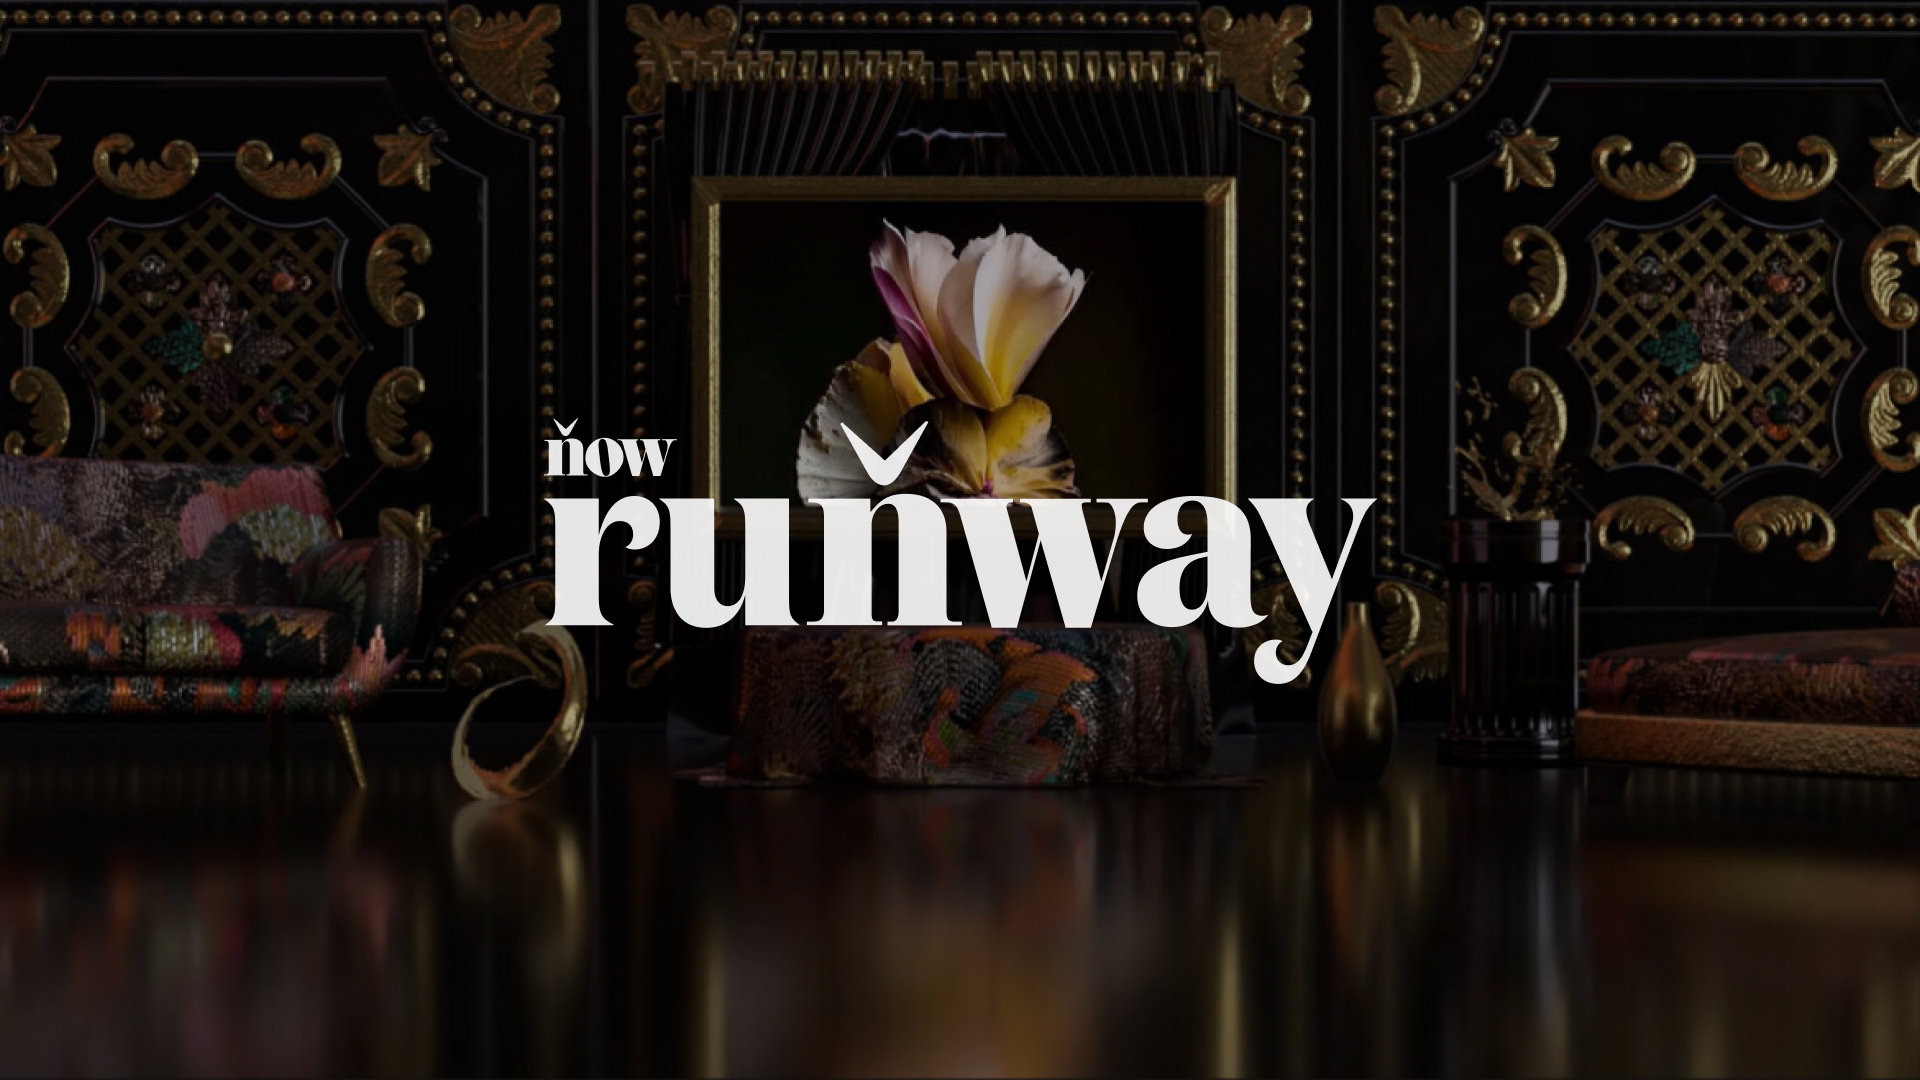 Now Runway: Đối tác của Christie và Gucci trên Bộ sưu tập NFT sáng tạo